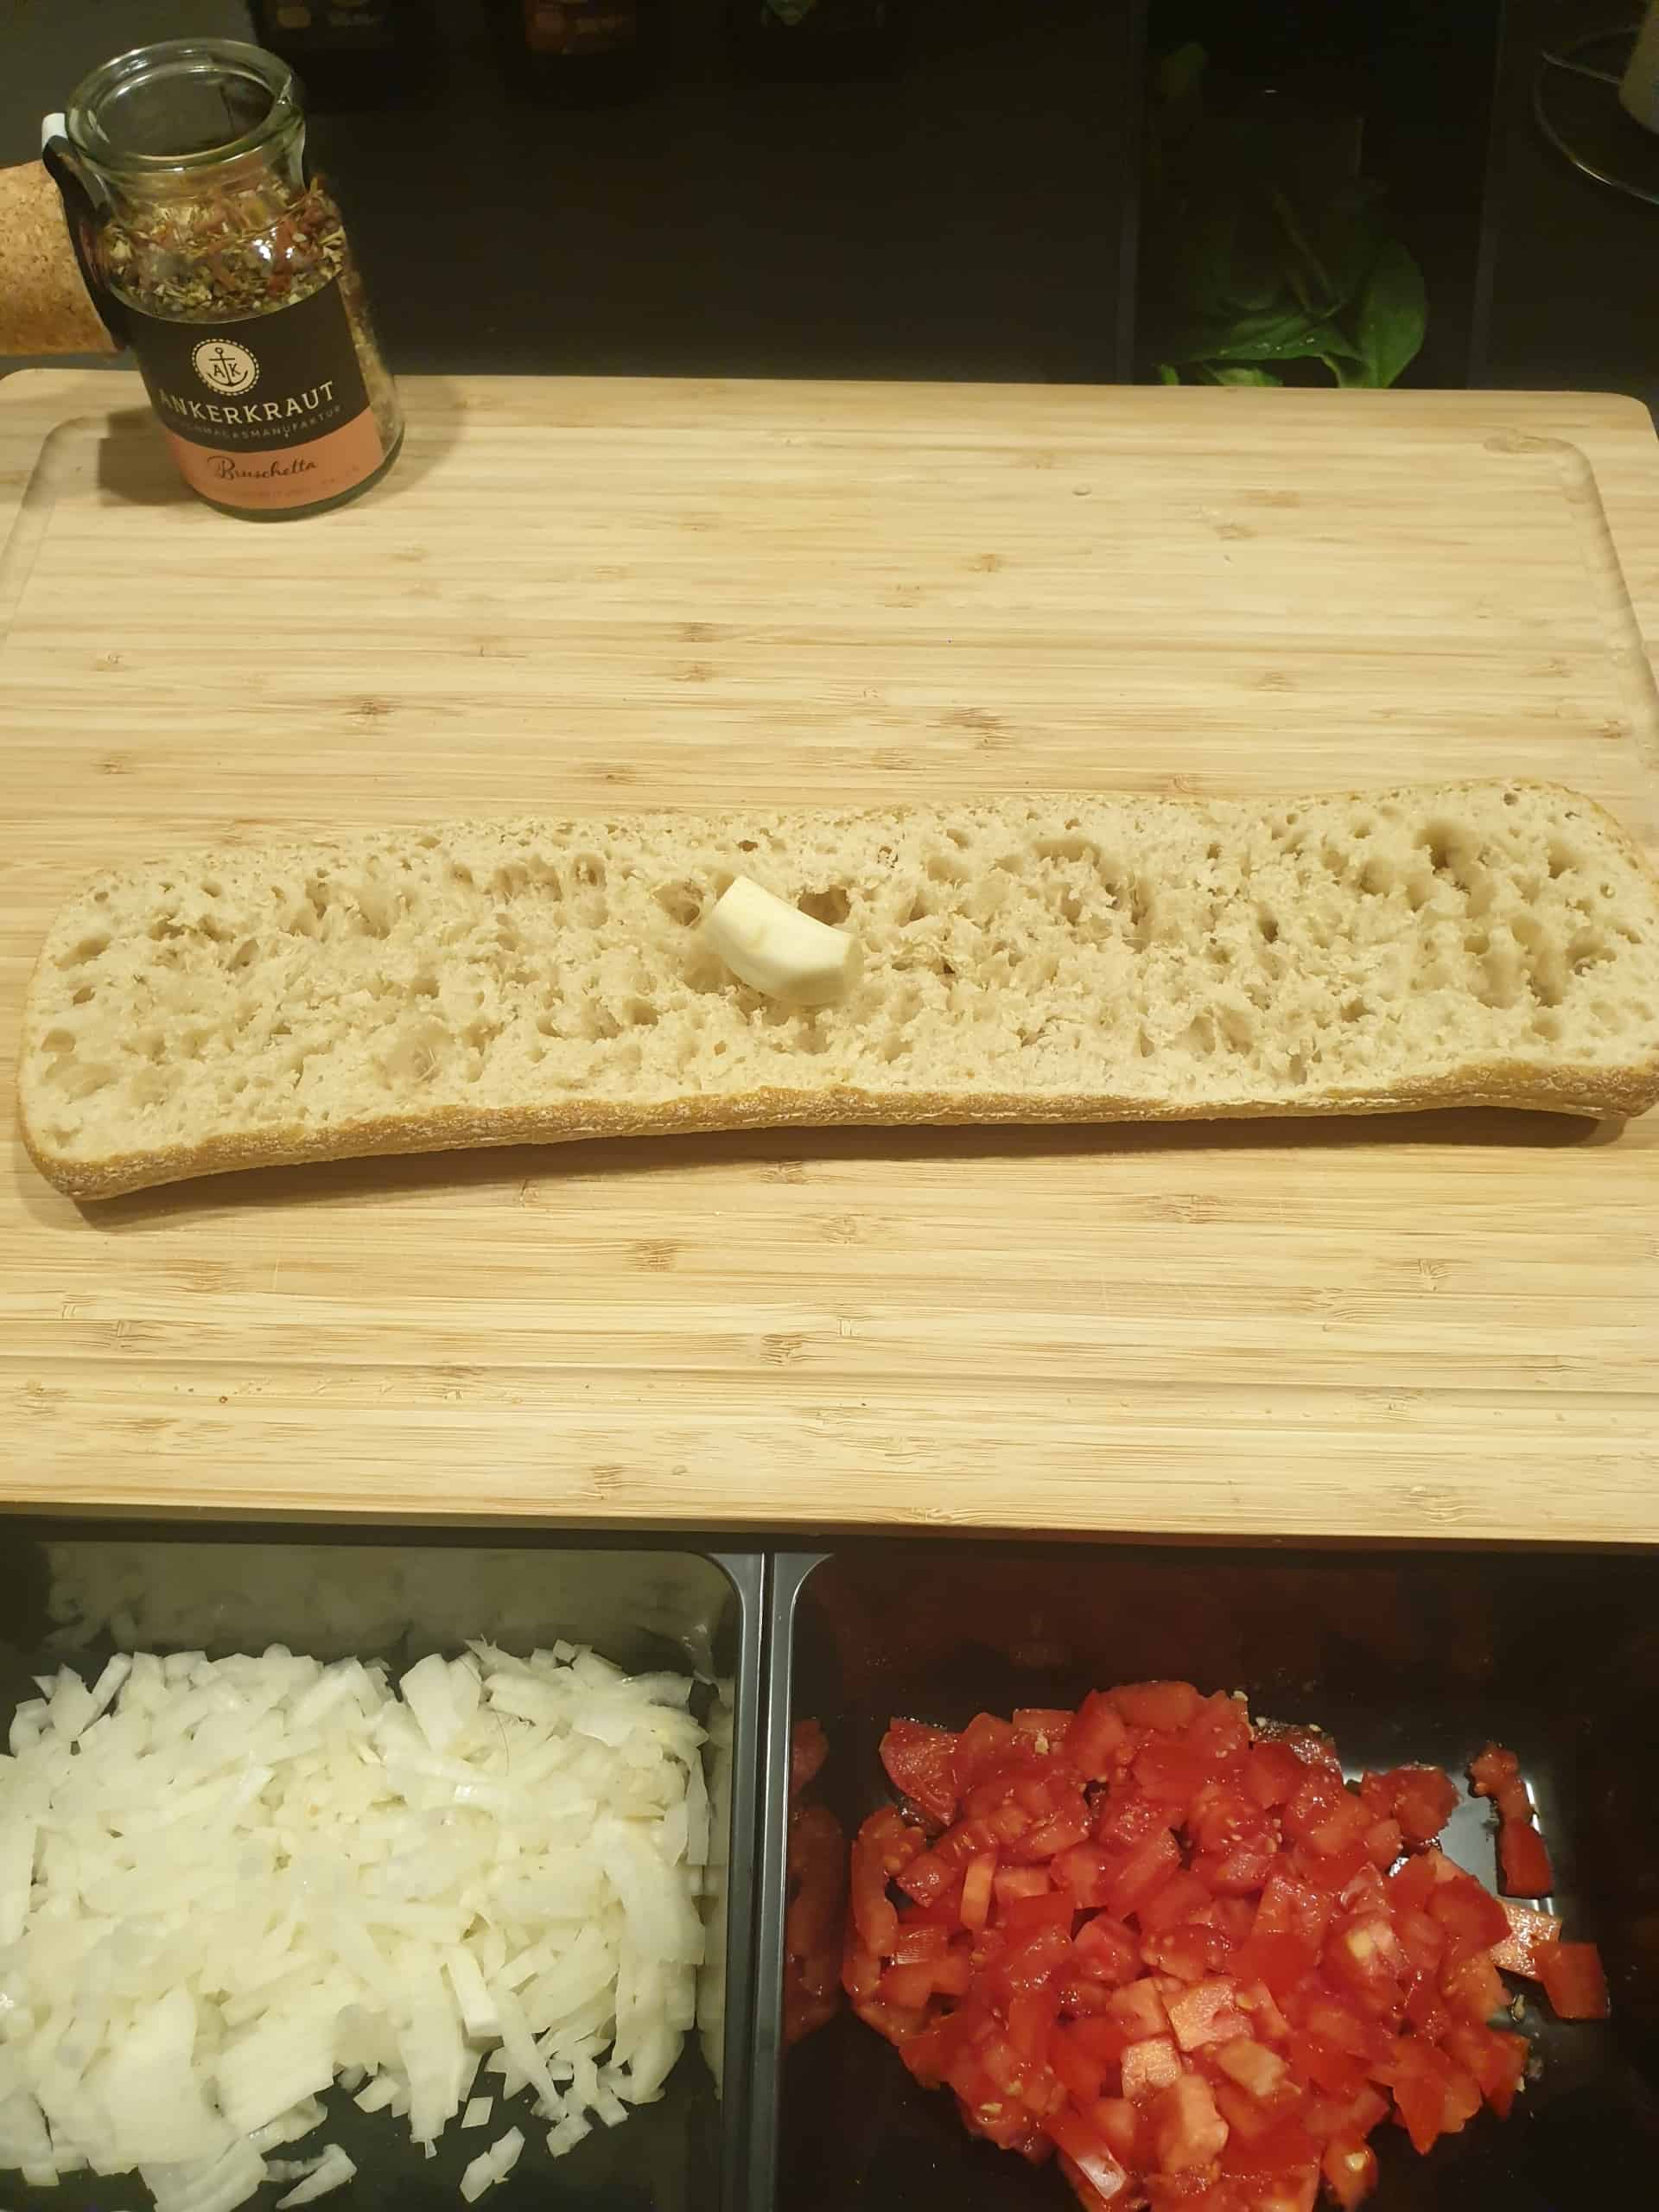 Brot mit Knoblauch abreiben